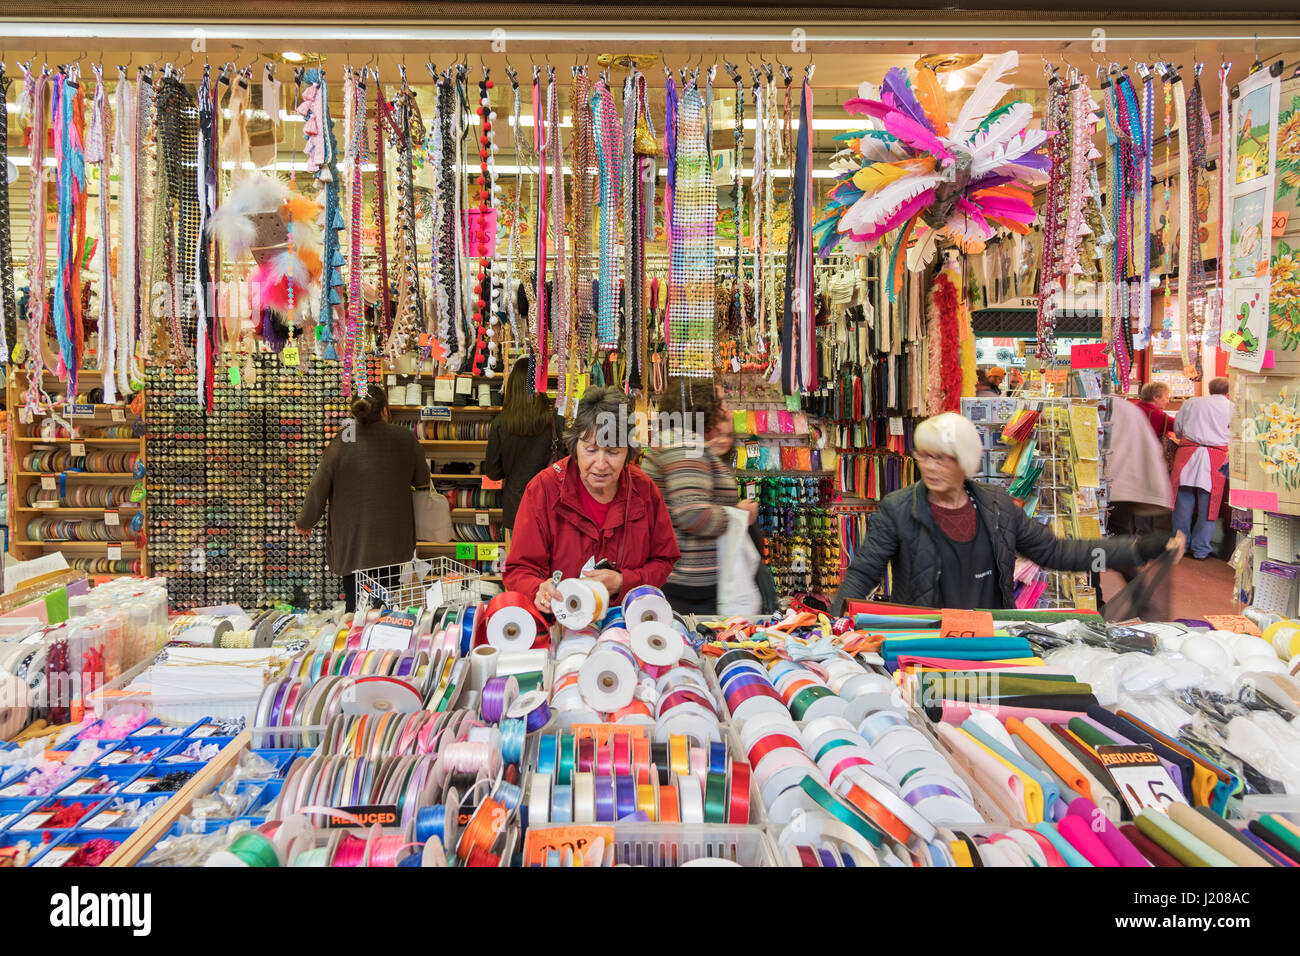 Woman shopping at haberdashery stall, Grainger Market, Newcastle upon Tyne, England, UK Stock Photo